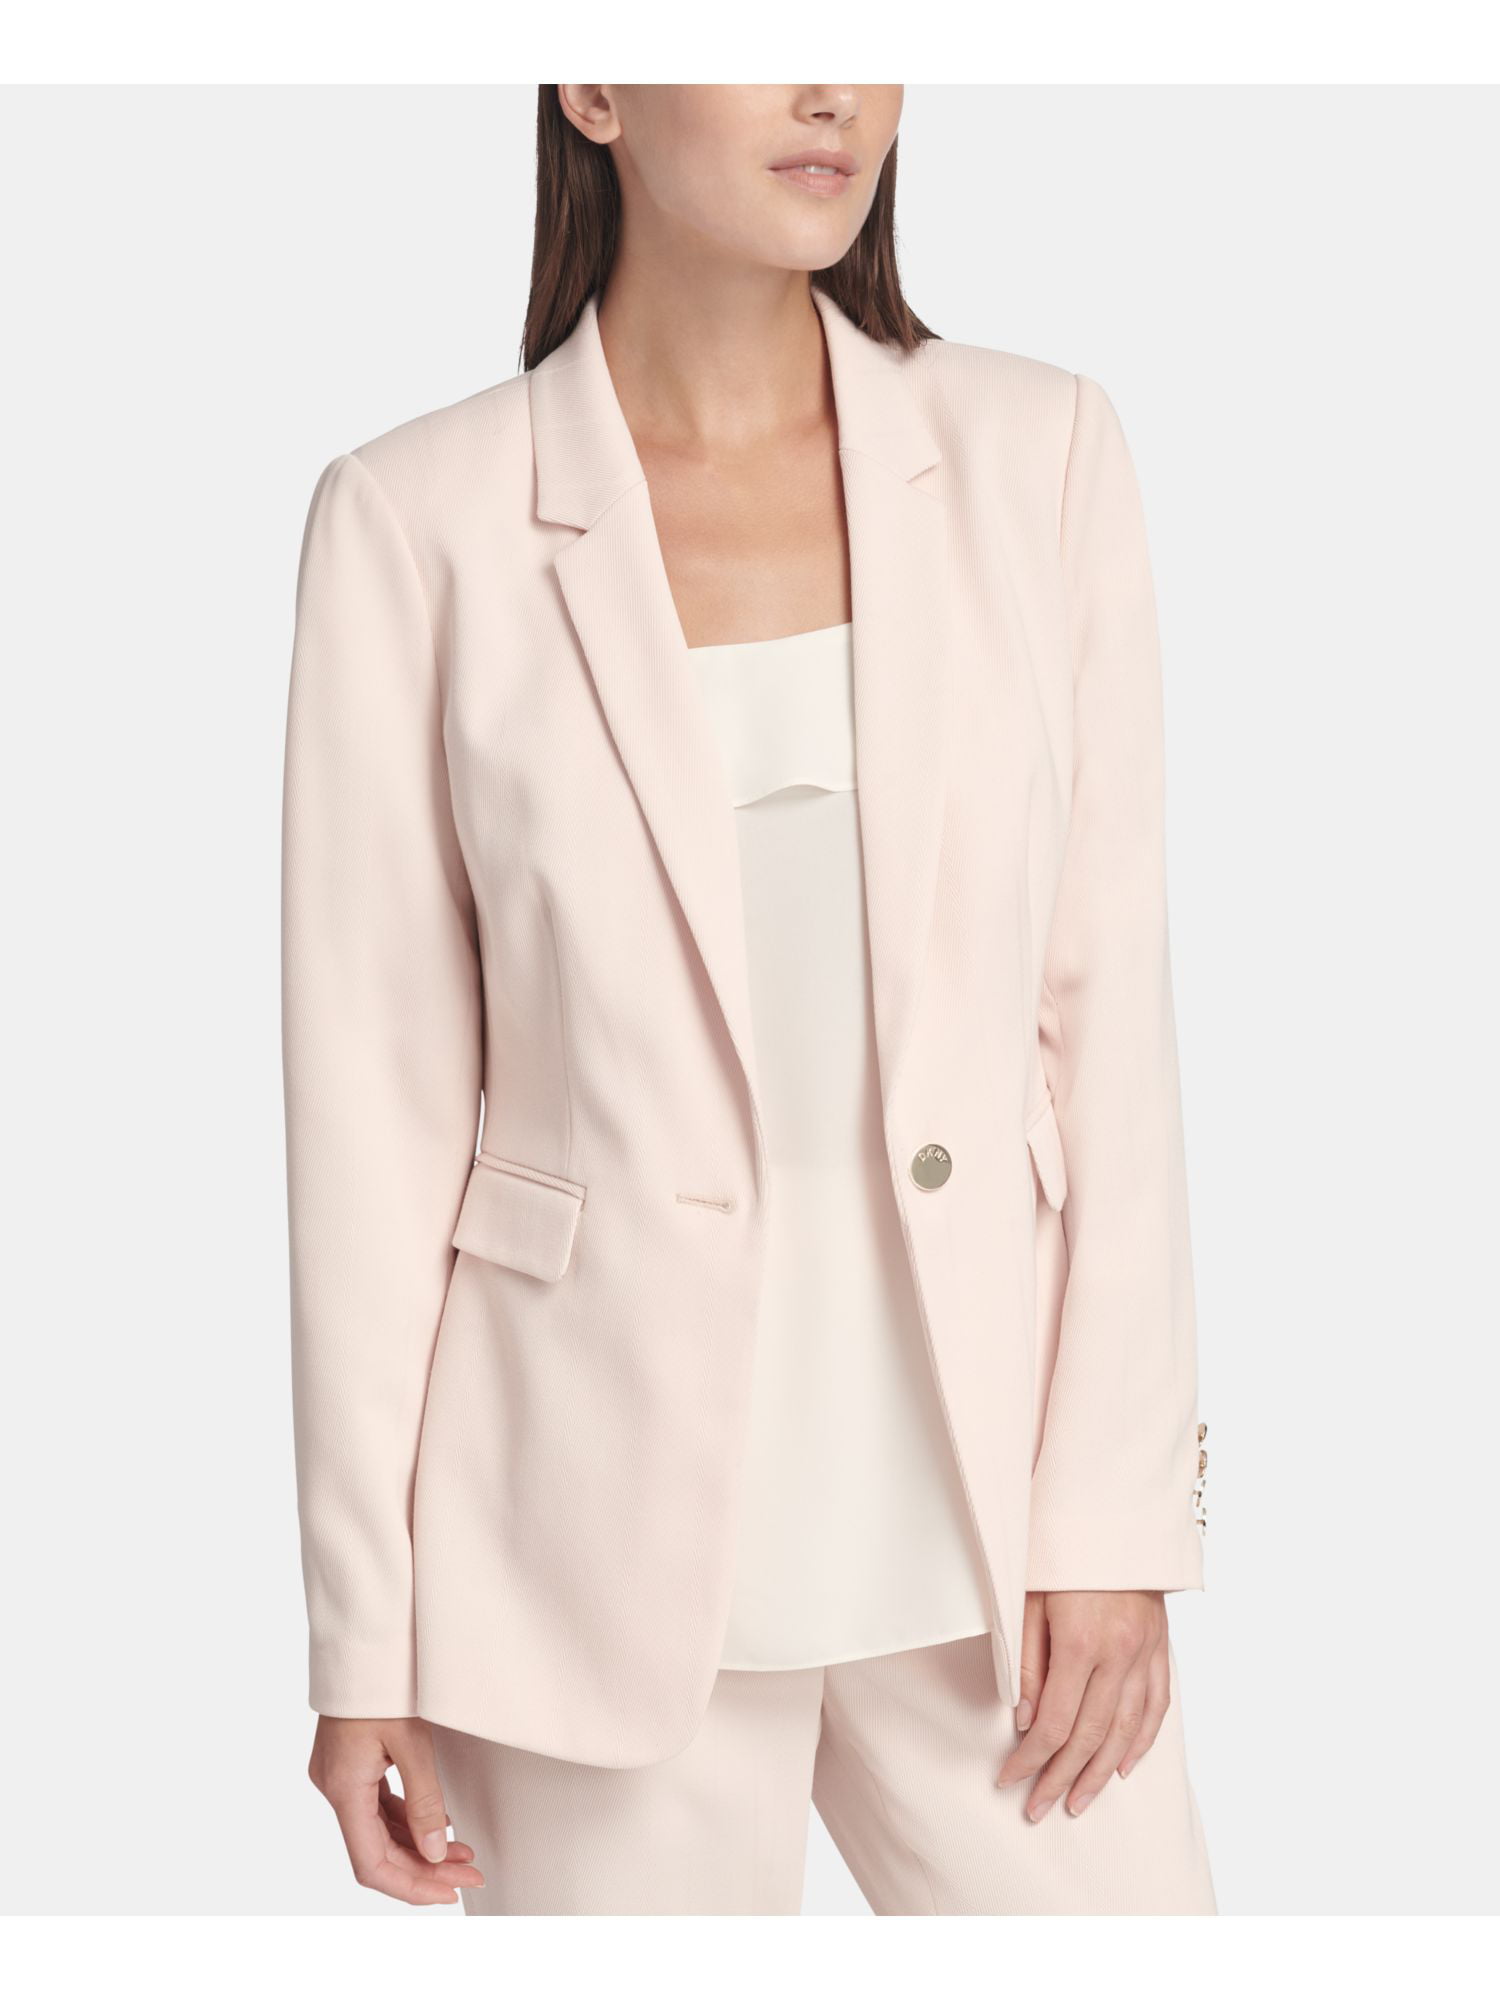 DKNY - DKNY Womens Pink Wear To Work Jacket Size: 16 - Walmart.com ...